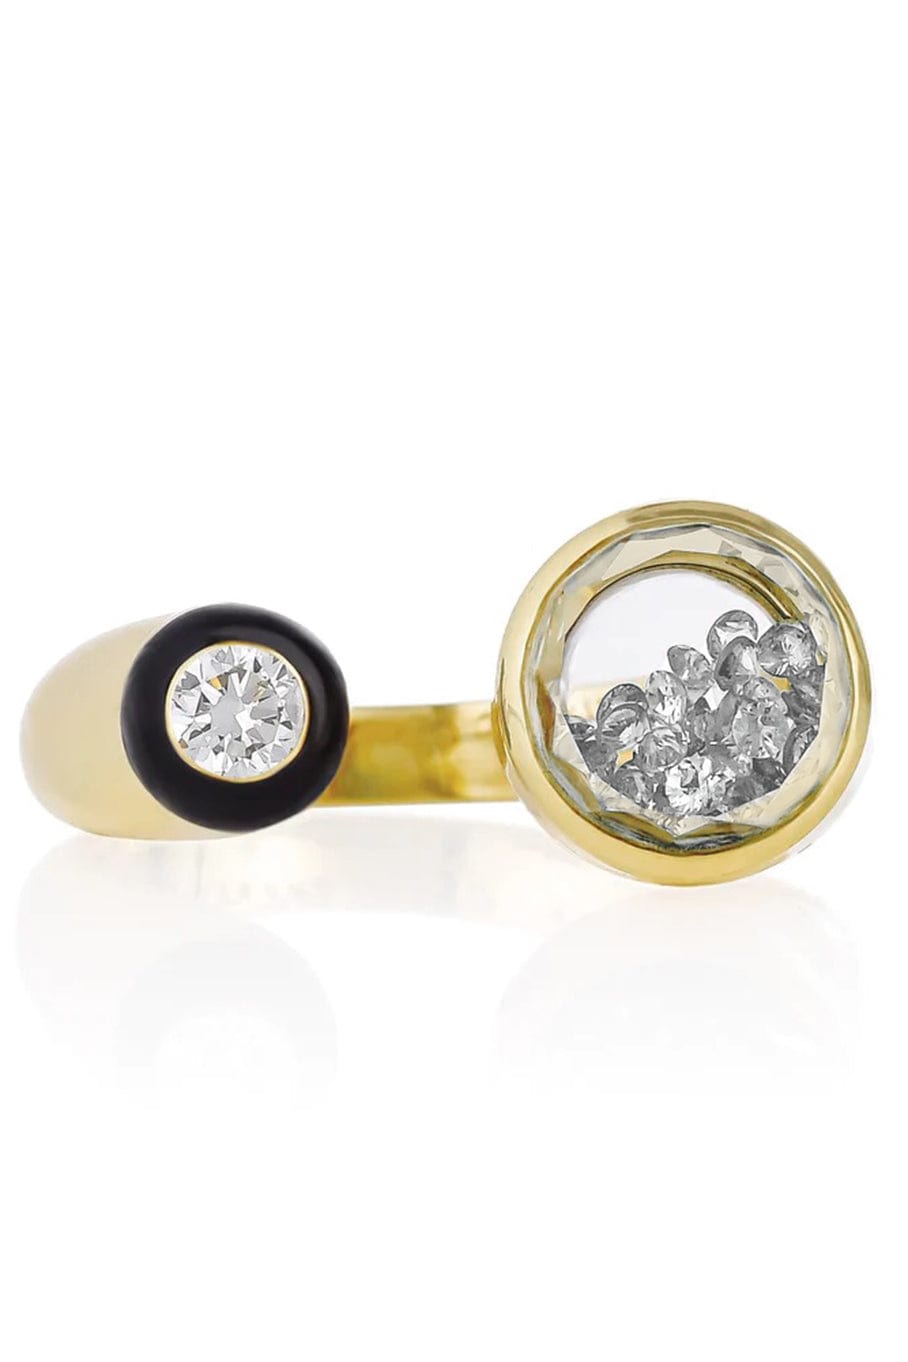 MORITZ GLIK-Orbita Diamond Ring-YELLOW GOLD